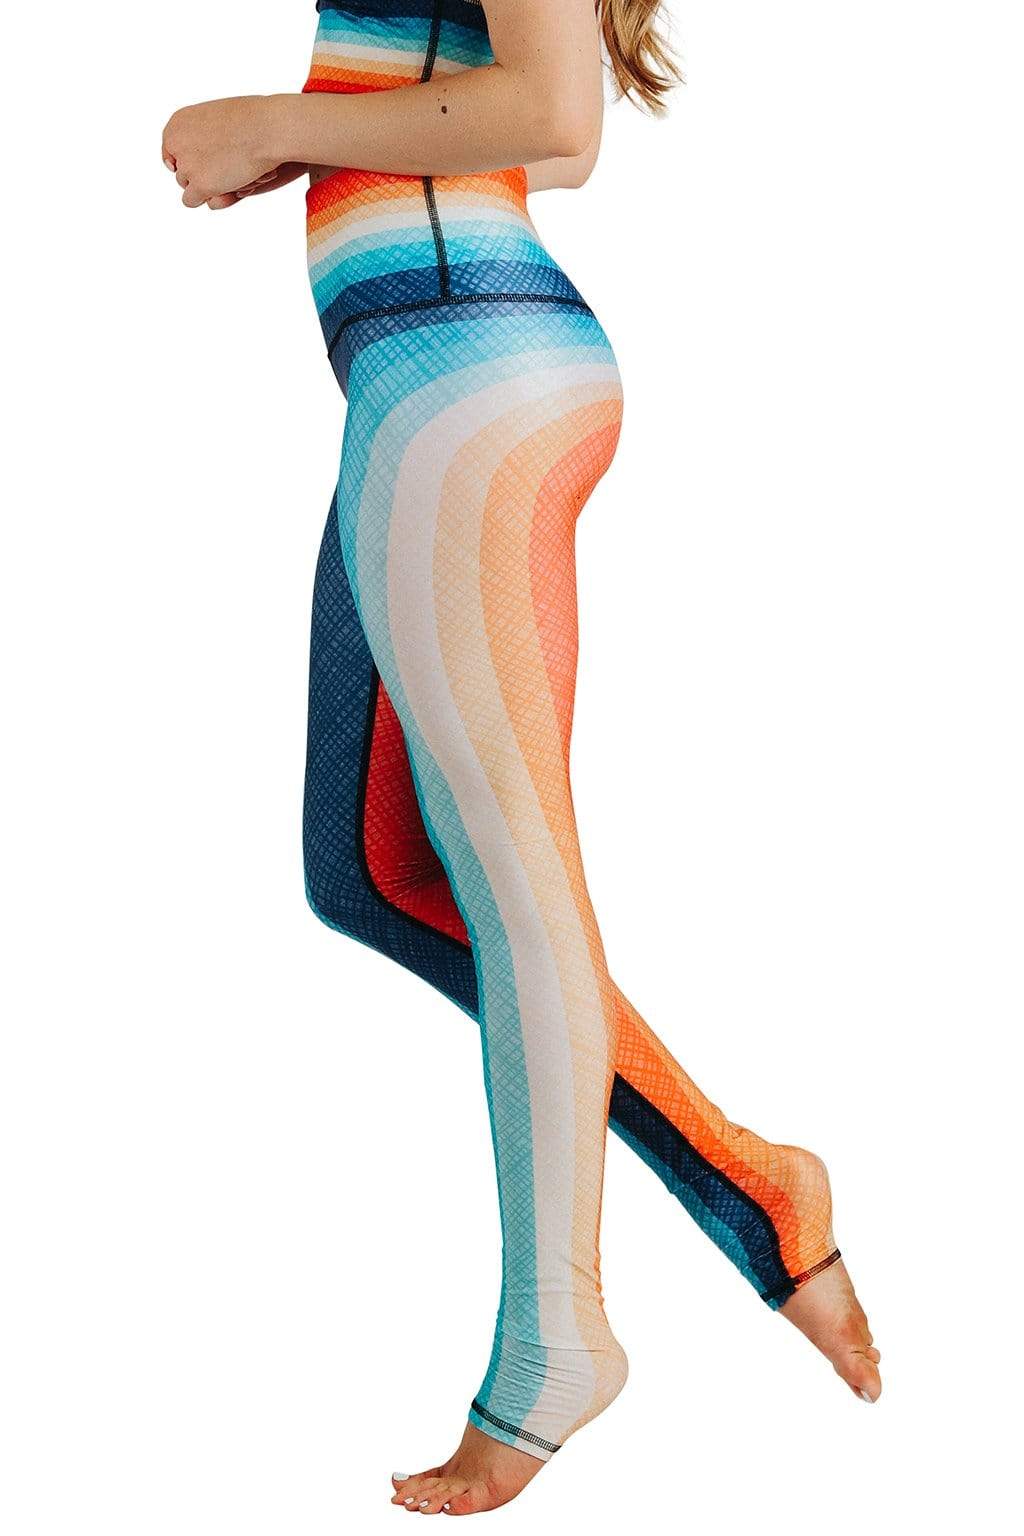 50's Retro Style Multi Colored Casual Leggings